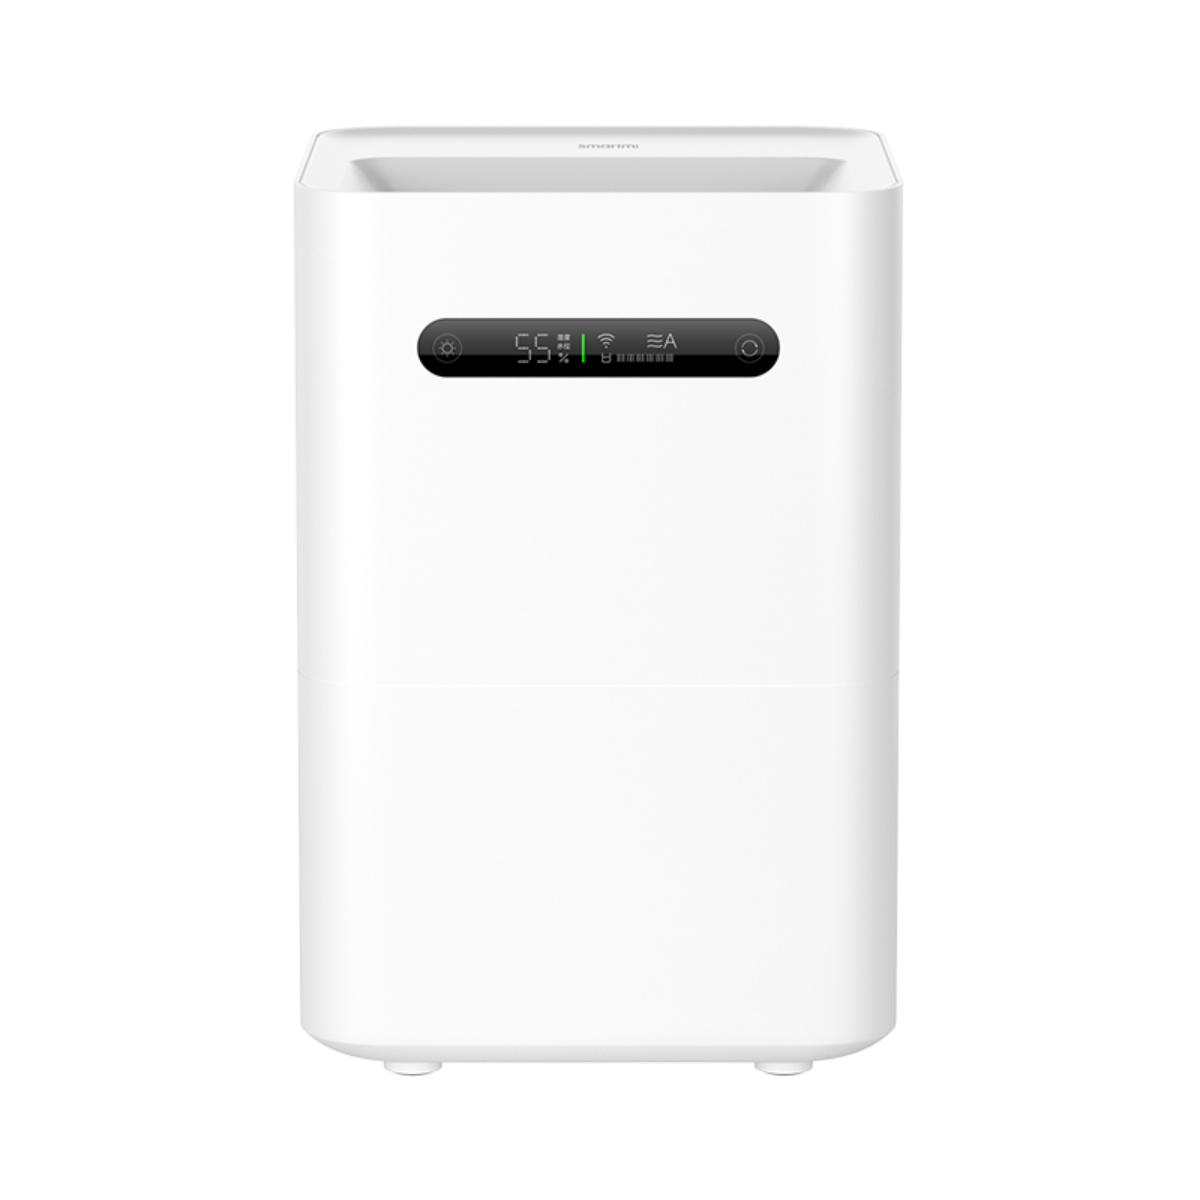 white 2 Humidifier (8 Raumgröße: 60 m³) Luftbefeuchter SMARTMI Watt, Evaporative